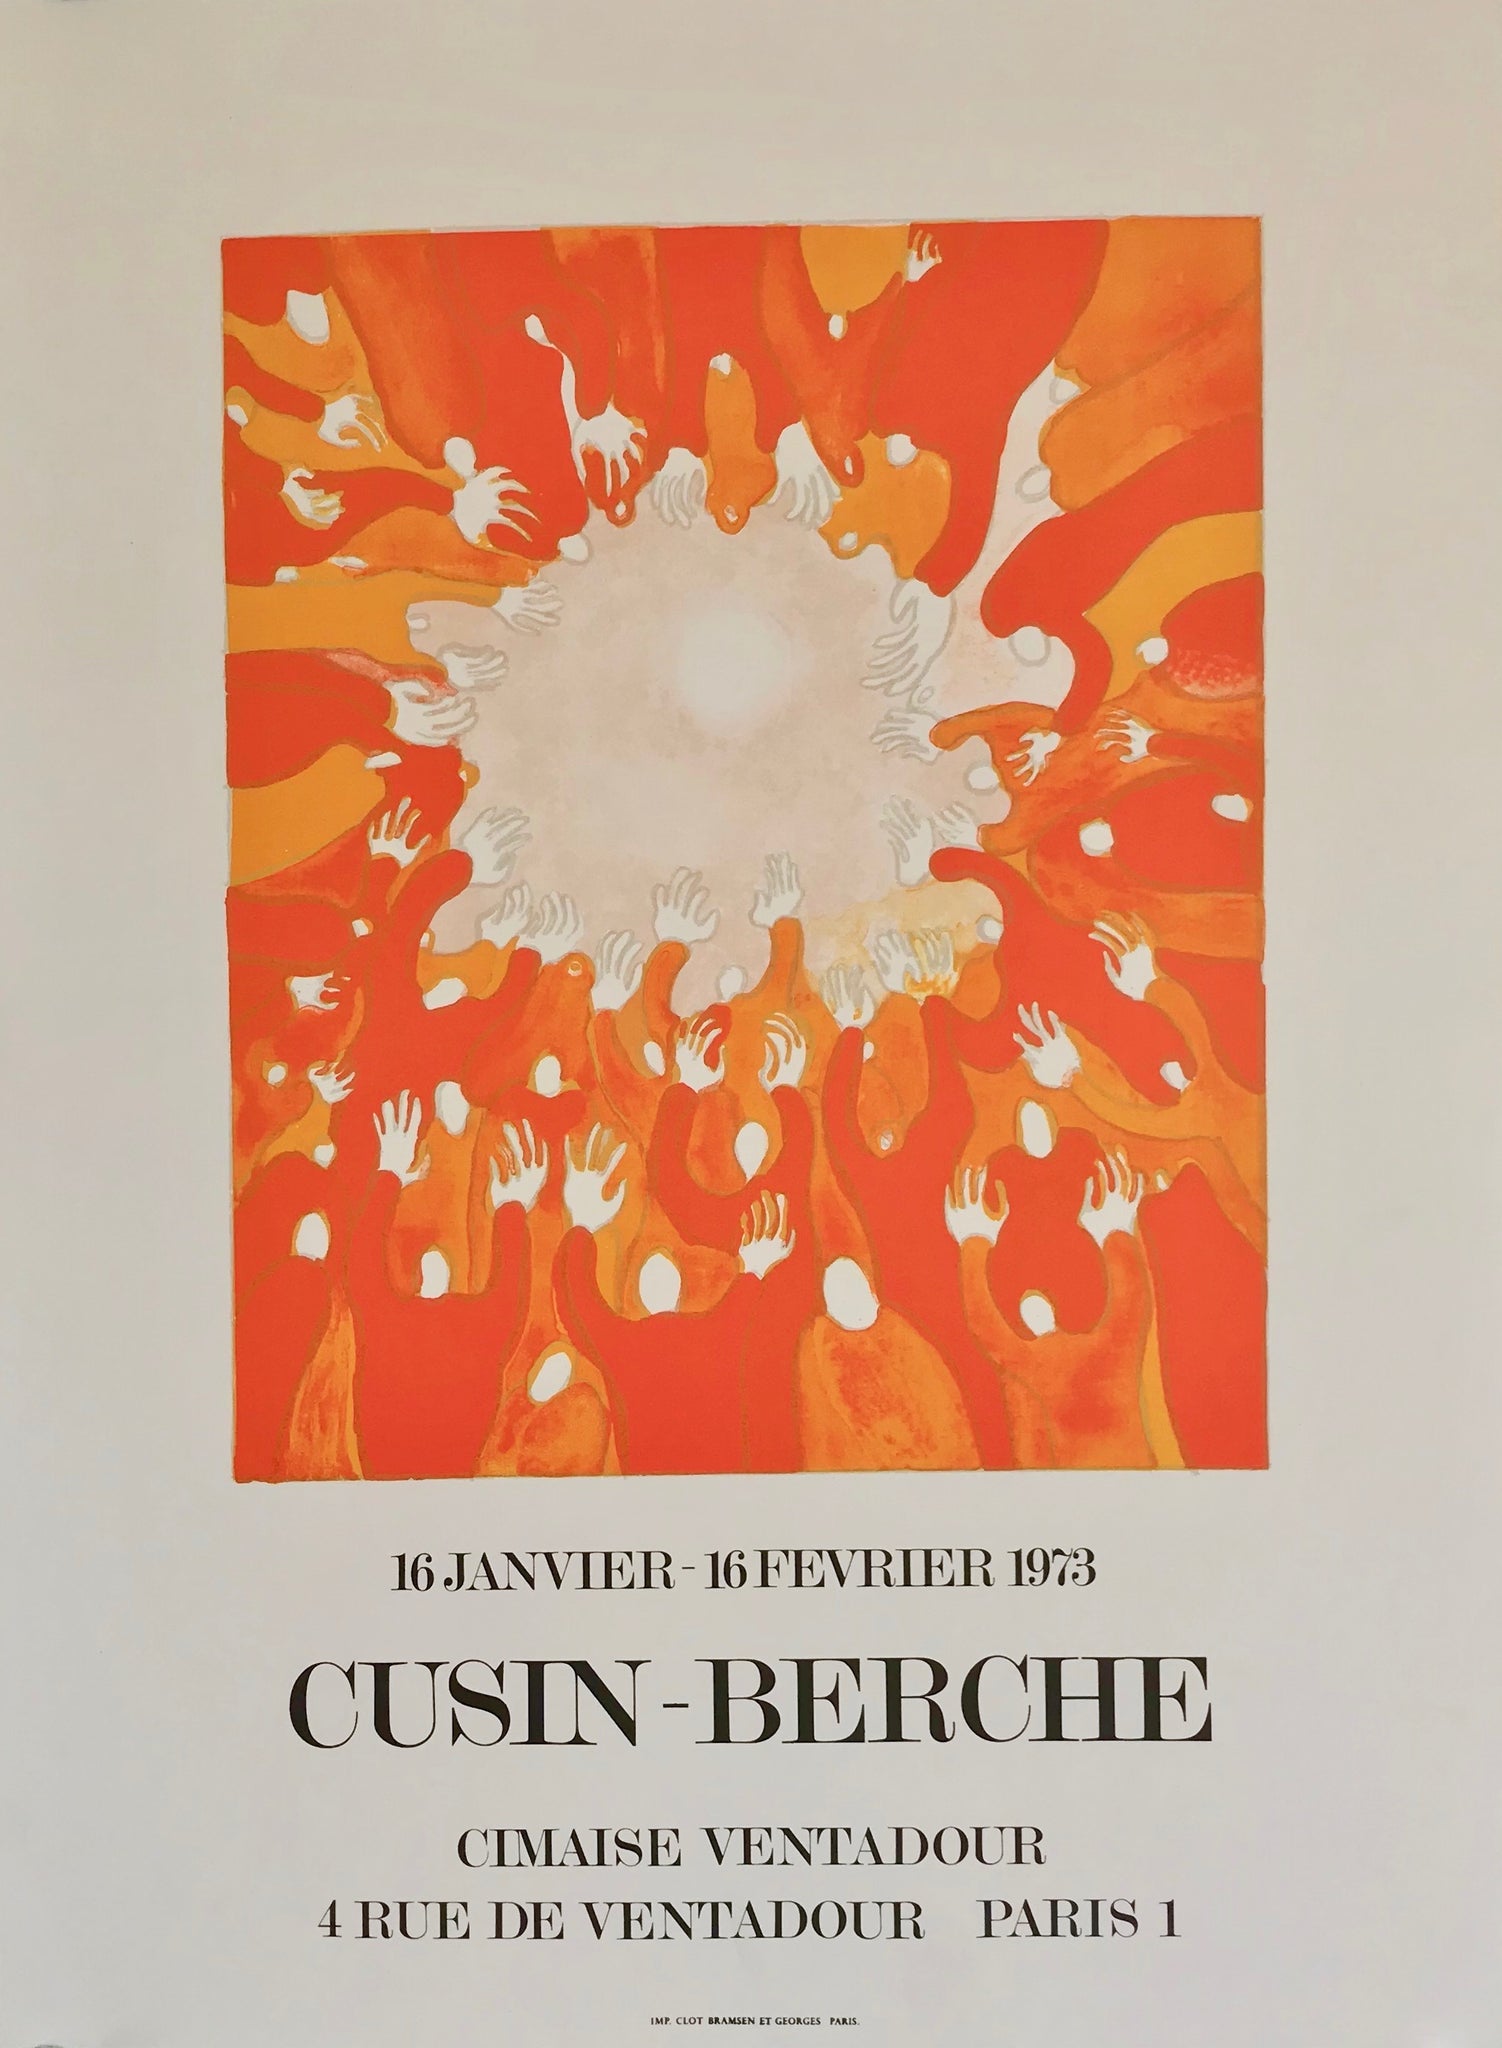 Affiche Galerie Cimaise Par Cusin-Berche, 1973    Exposition du 16 janvier au 16 février 1973. Exposition de Cusin-Berche, à la galerie Cimaise Ventadour.